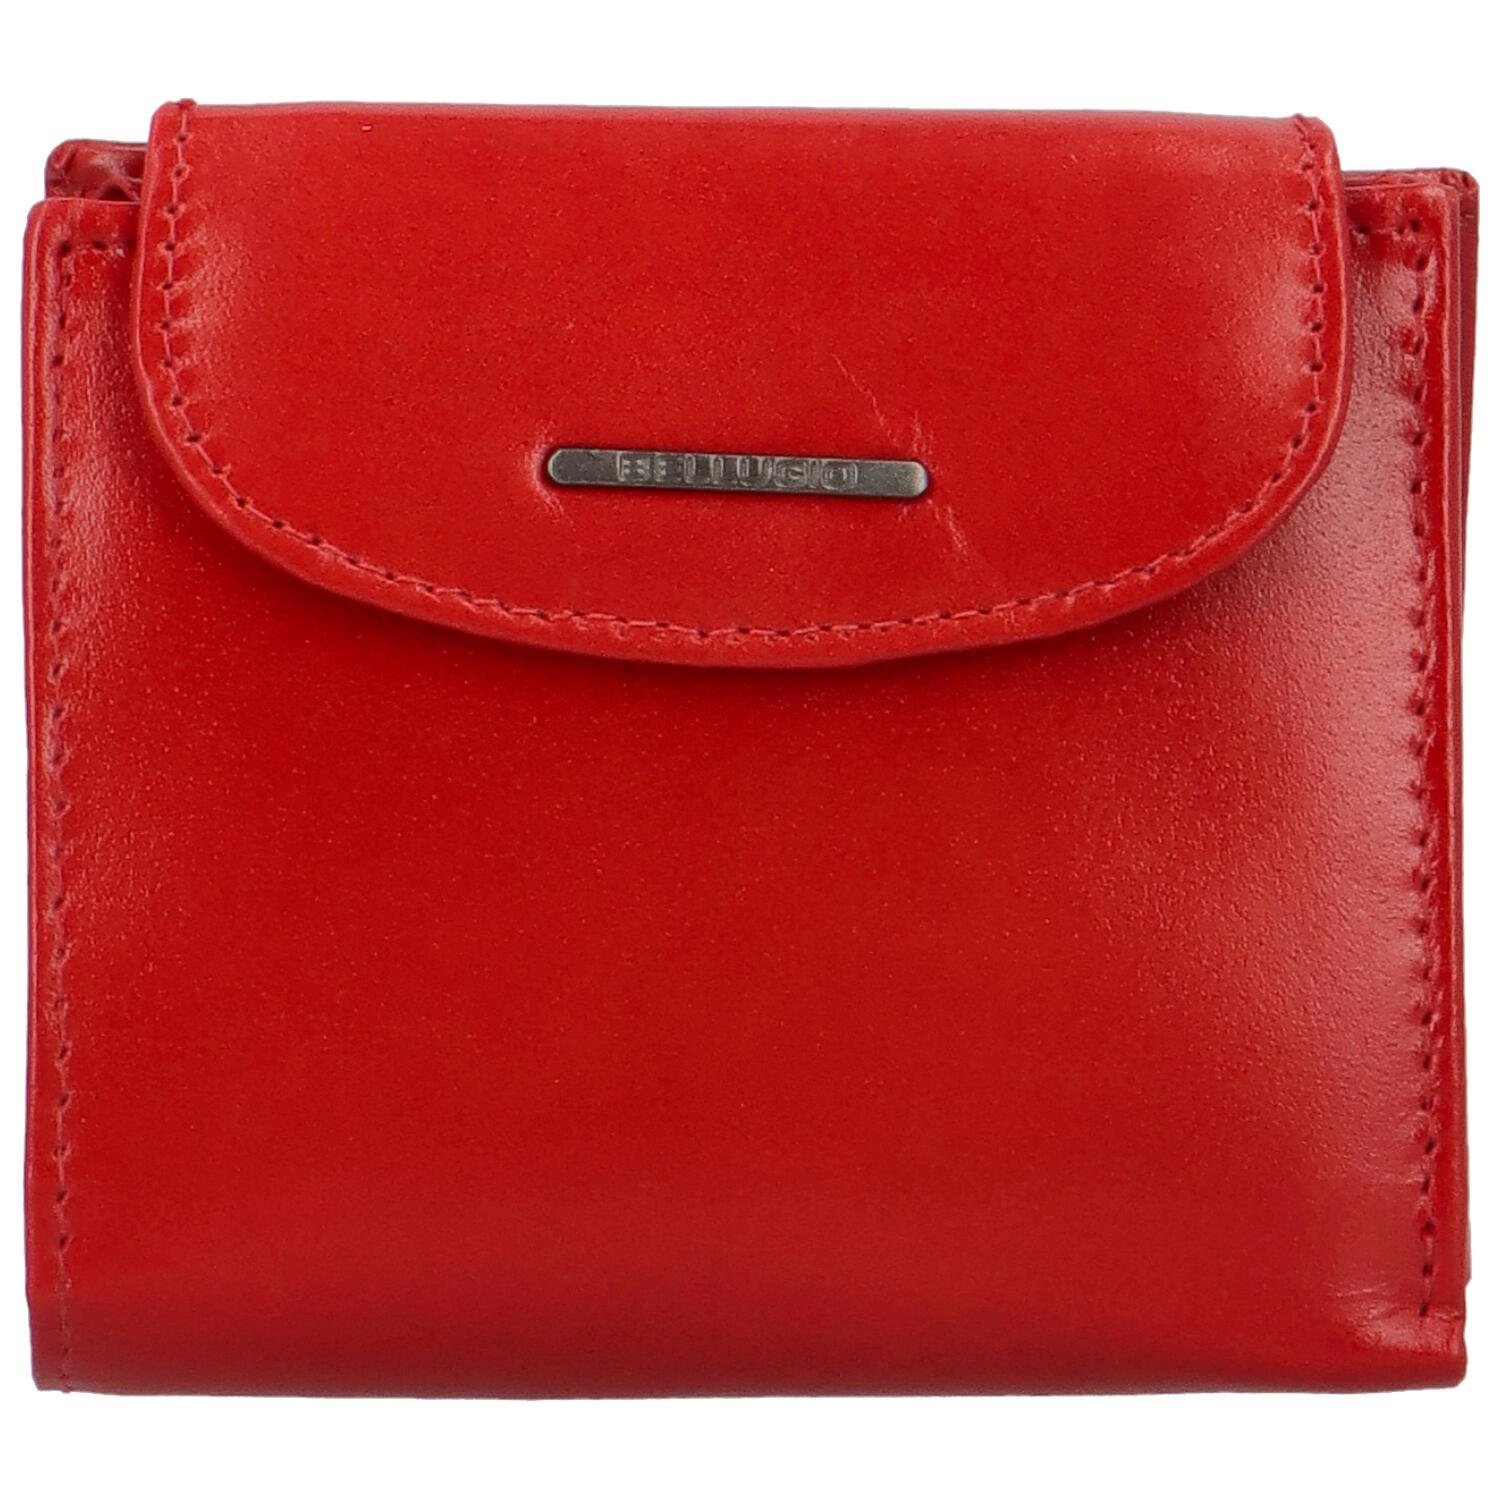 Dámská kožená peněženka červená - Bellugio Werisia červená